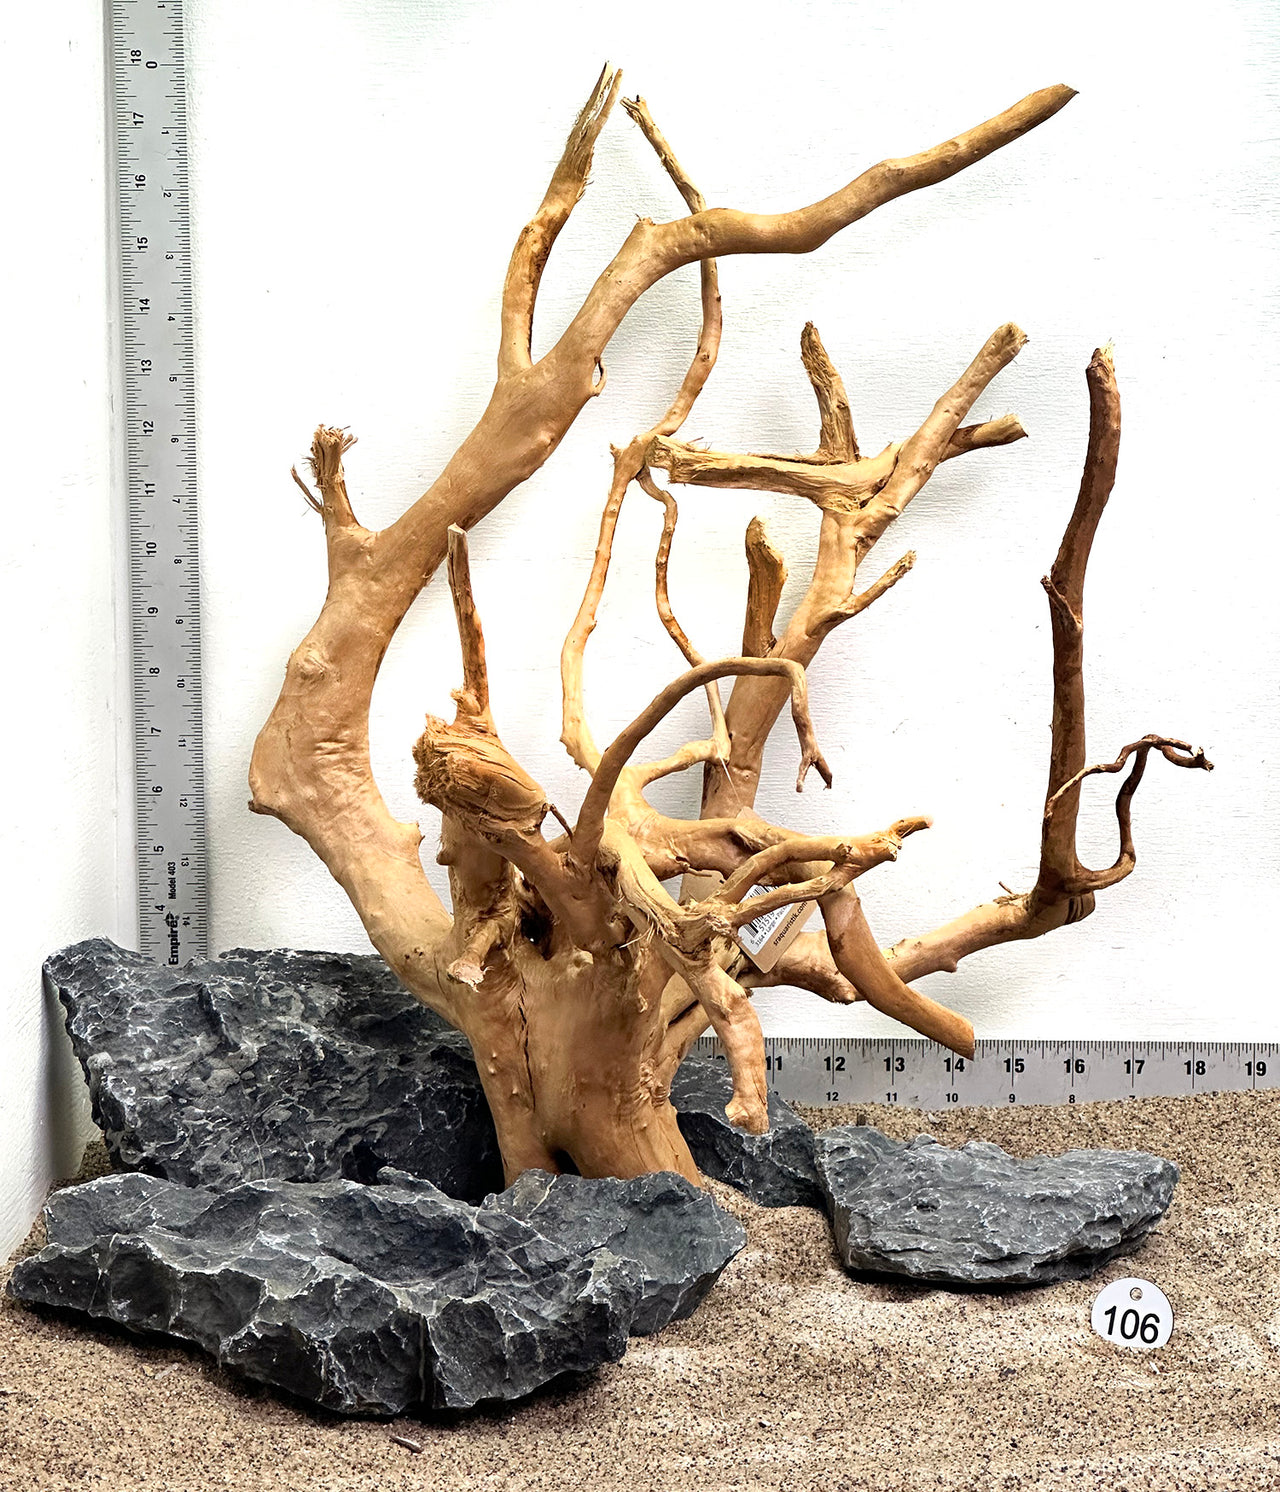 WYSIWYG #106S - Spider Wood and Seiryu Stone Aquascape Kit Combo